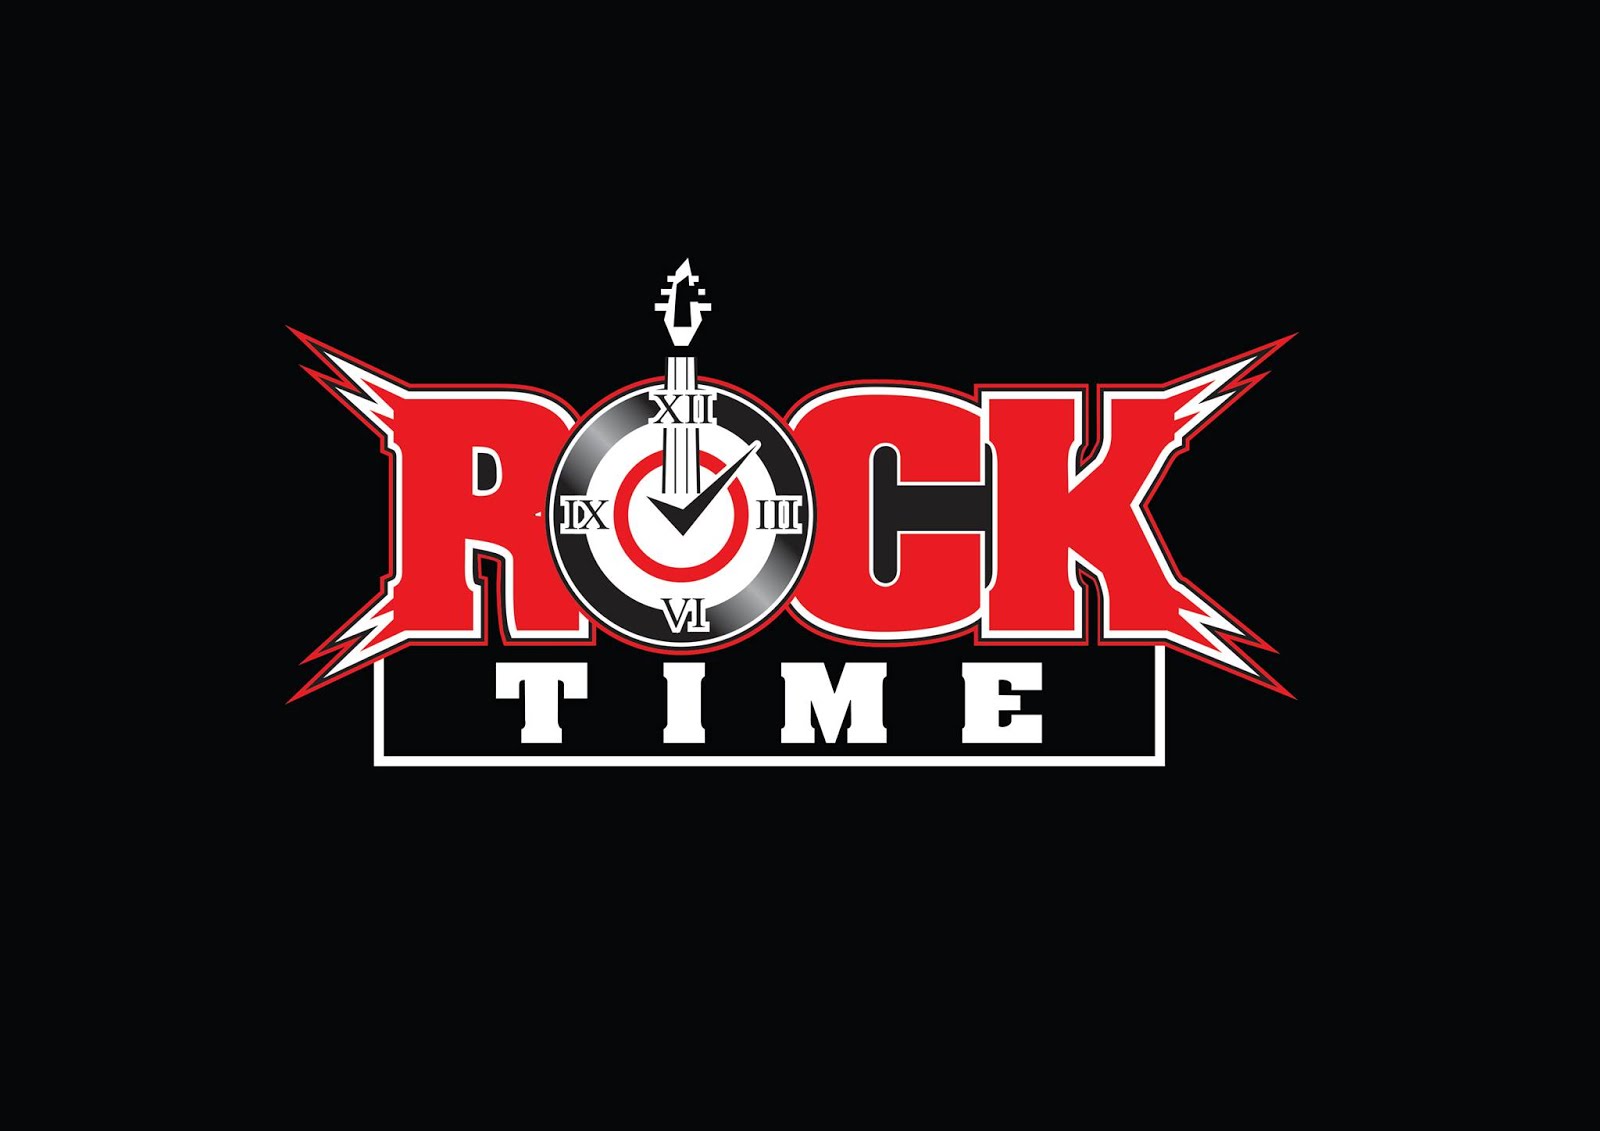 Rocktime.gr